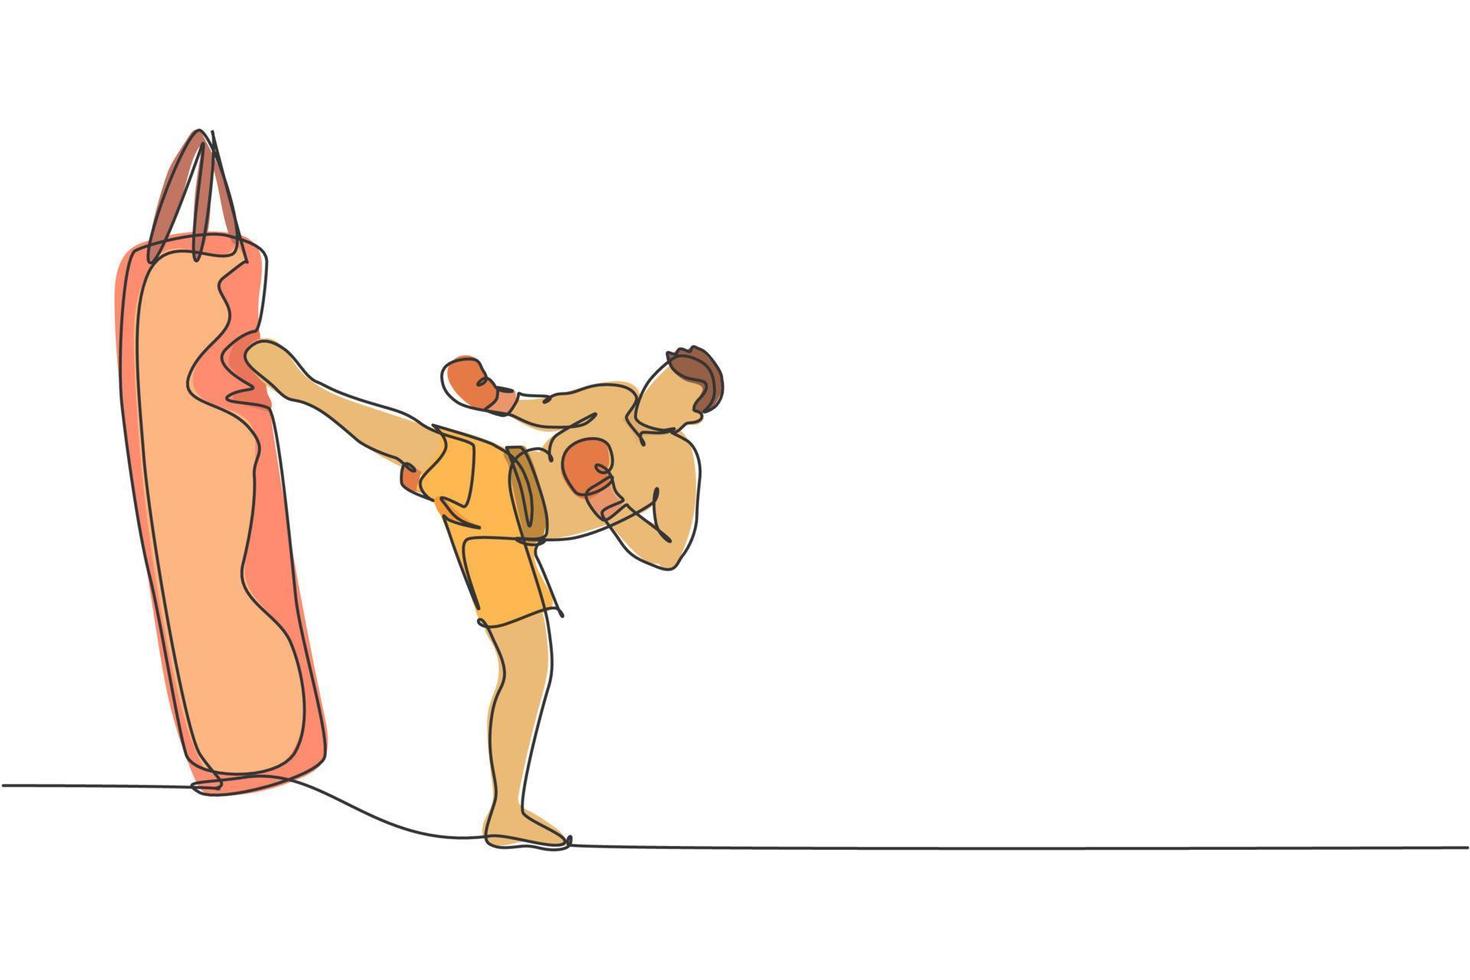 um desenho de linha contínua do jovem atleta kickboxer treinando com saco de pancadas no centro de ginástica. conceito de esporte kickboxing combativo. ilustração em vetor design de desenho de linha única dinâmica